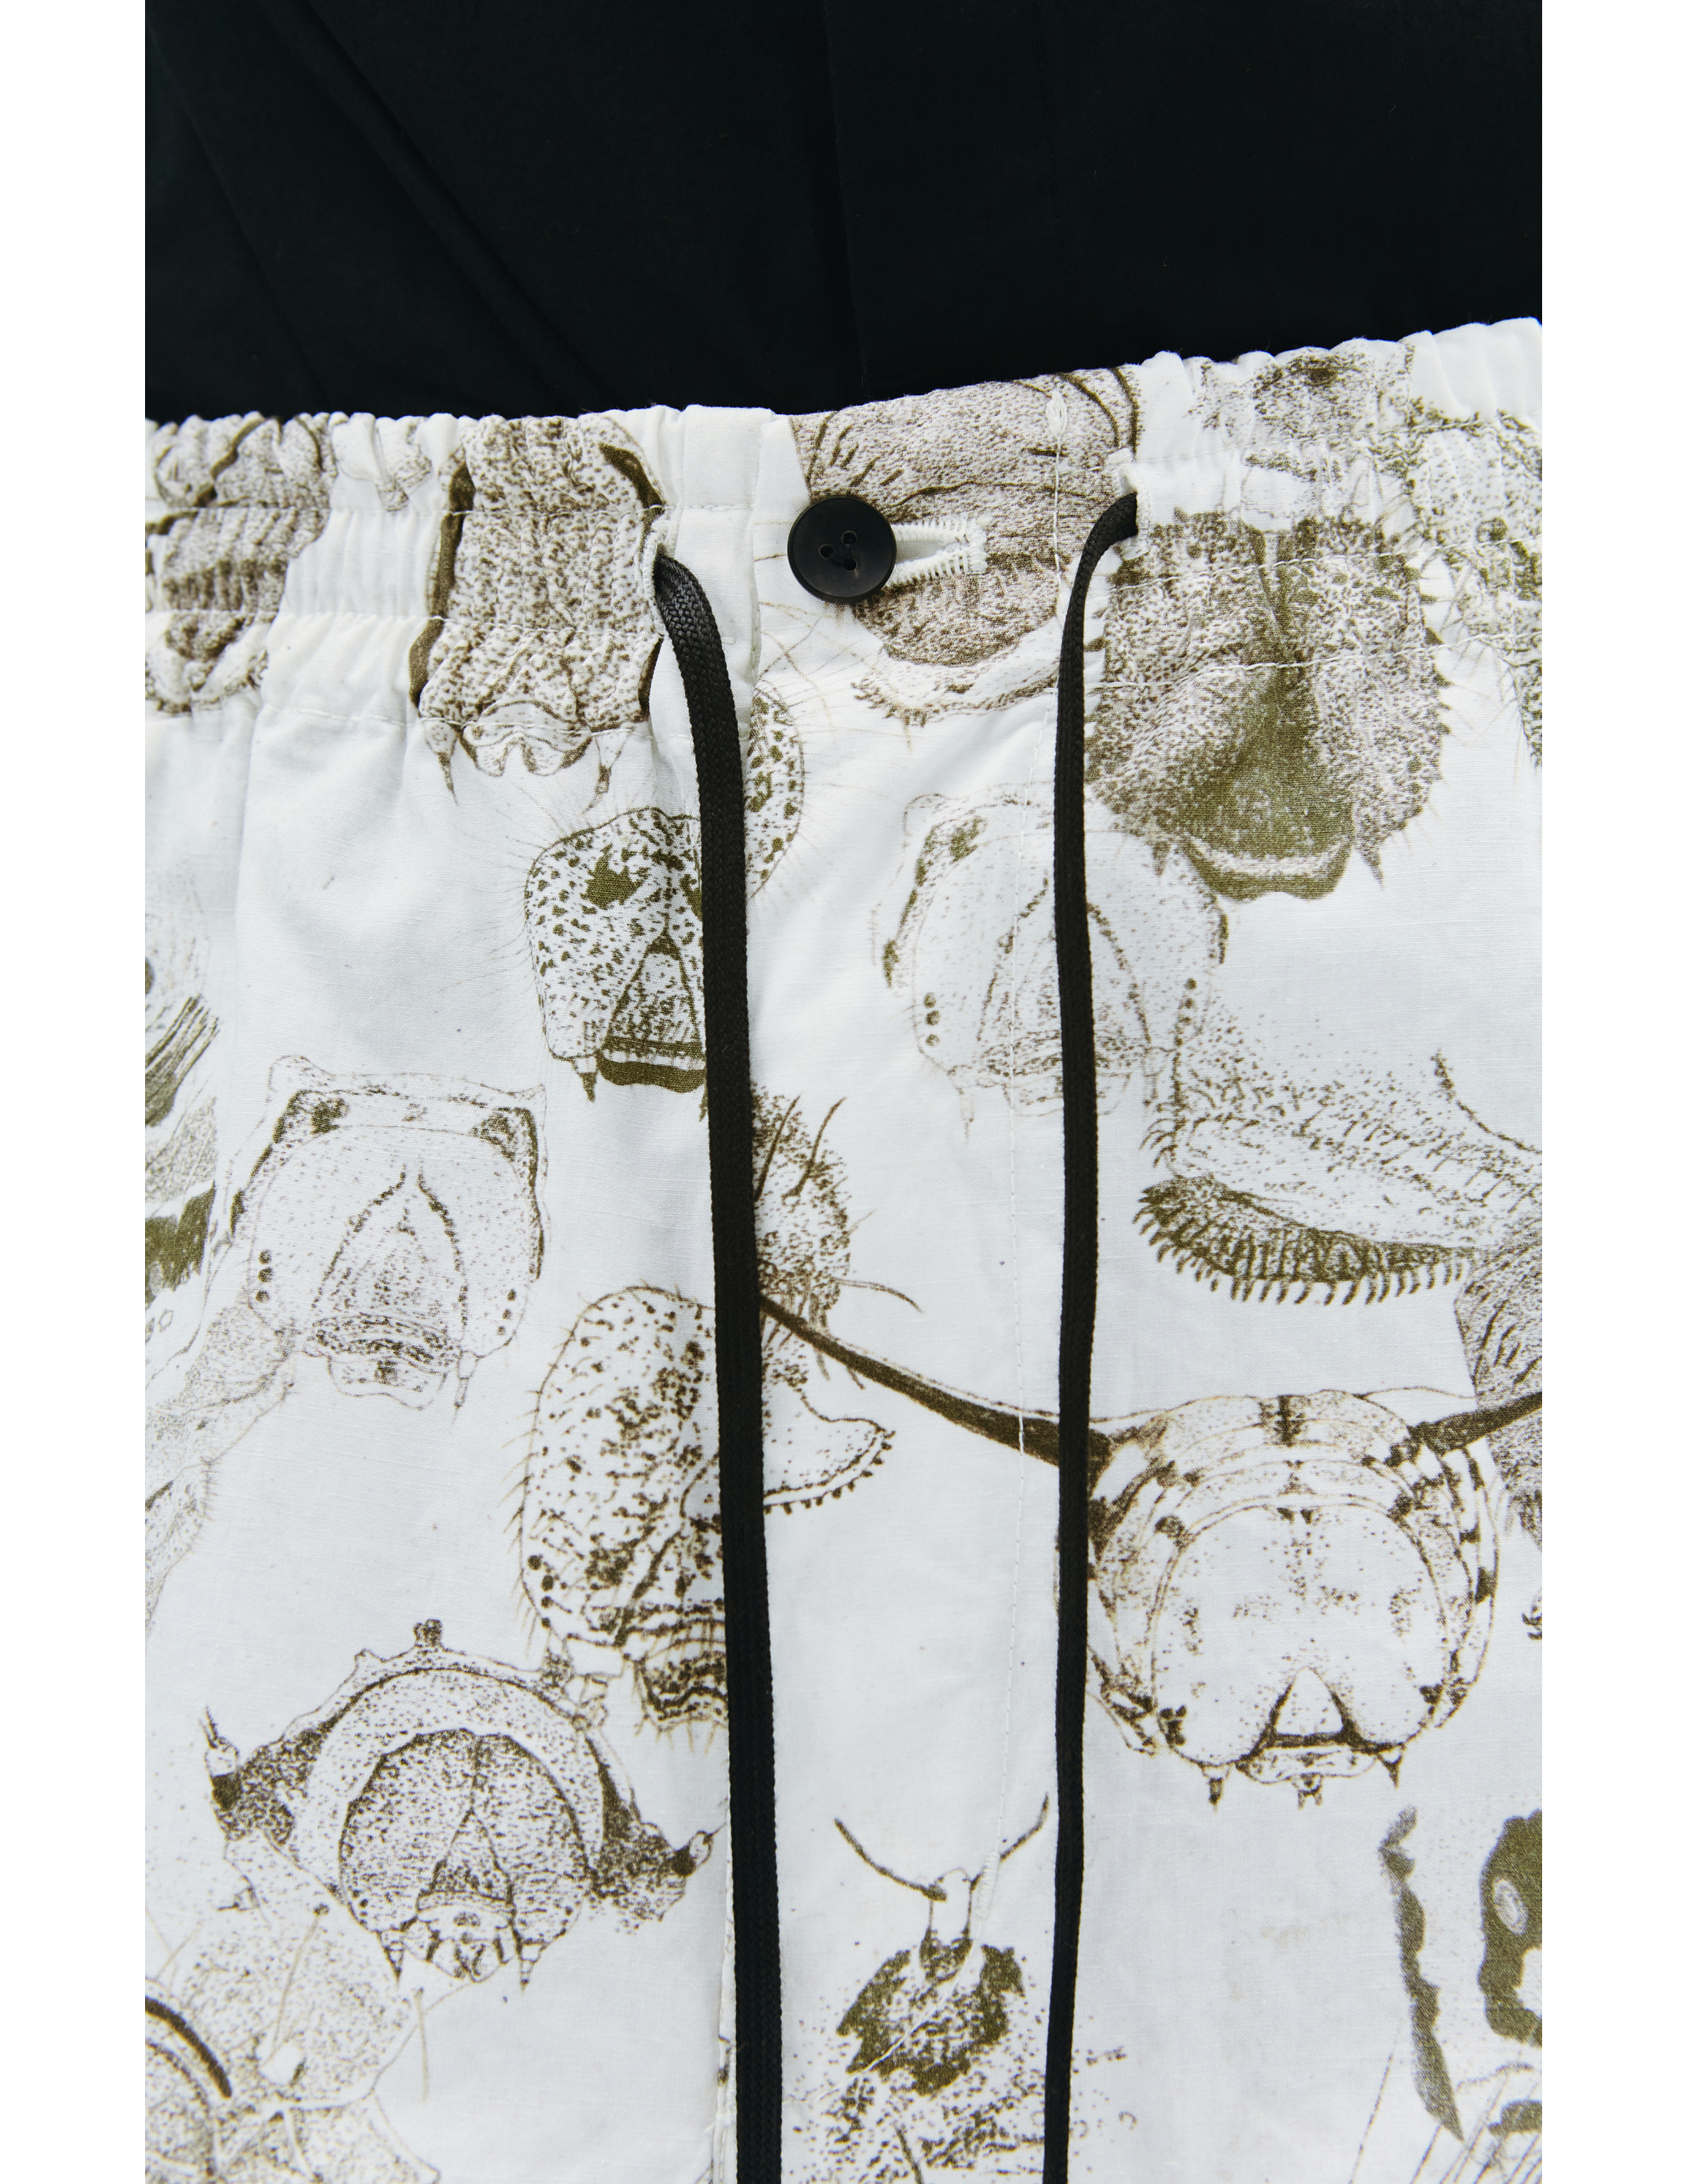 Широкие брюки с принтом насекомых The Viridi-Anne VI/3443/04, размер 4 VI/3443/04 - фото 4